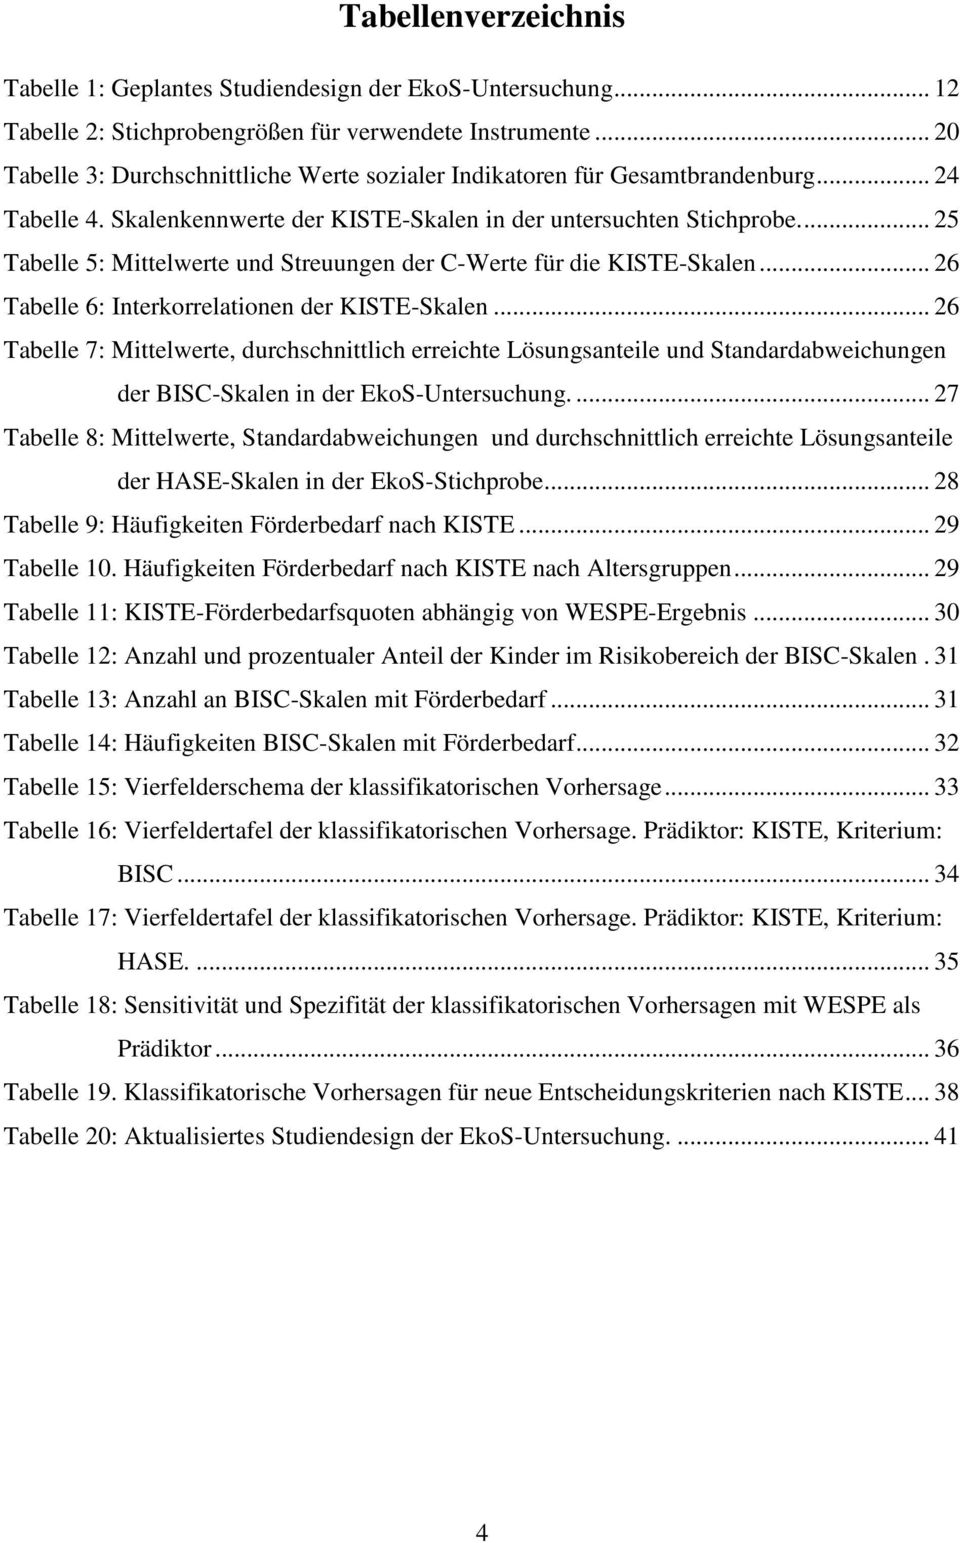 .. 25 Tabelle 5: Mittelwerte und Streuungen der C-Werte für die KISTE-Skalen... 26 Tabelle 6: Interkorrelationen der KISTE-Skalen.